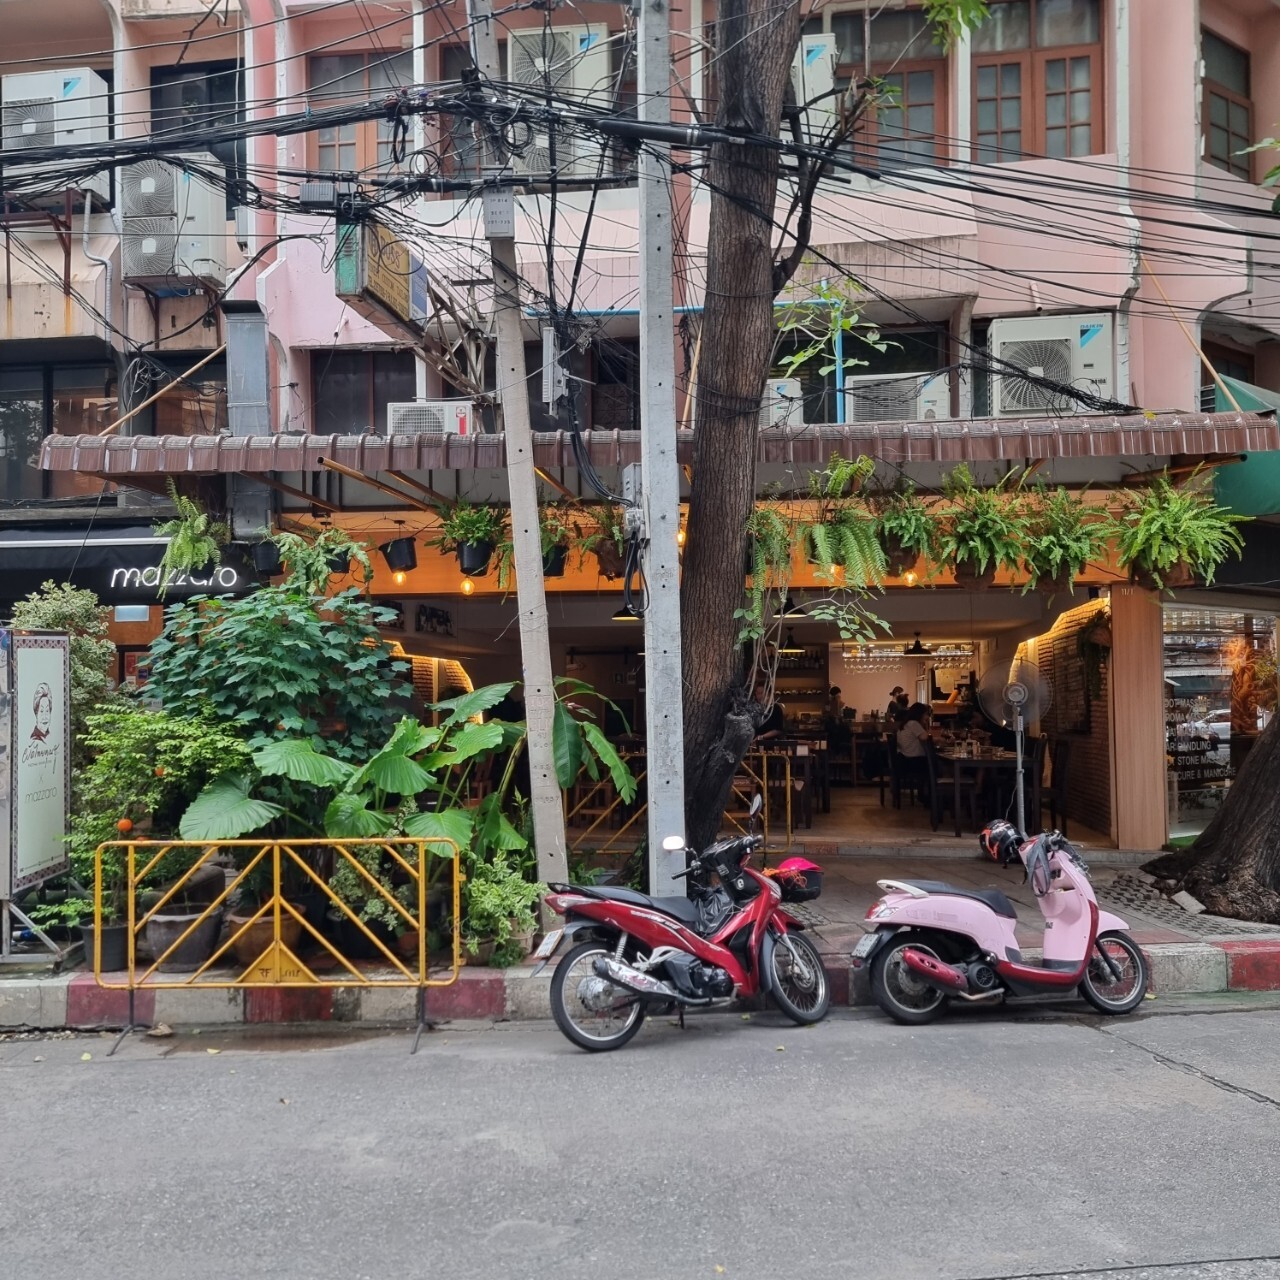 방콕 안드레 레스토랑
방락 안드레 레스토랑